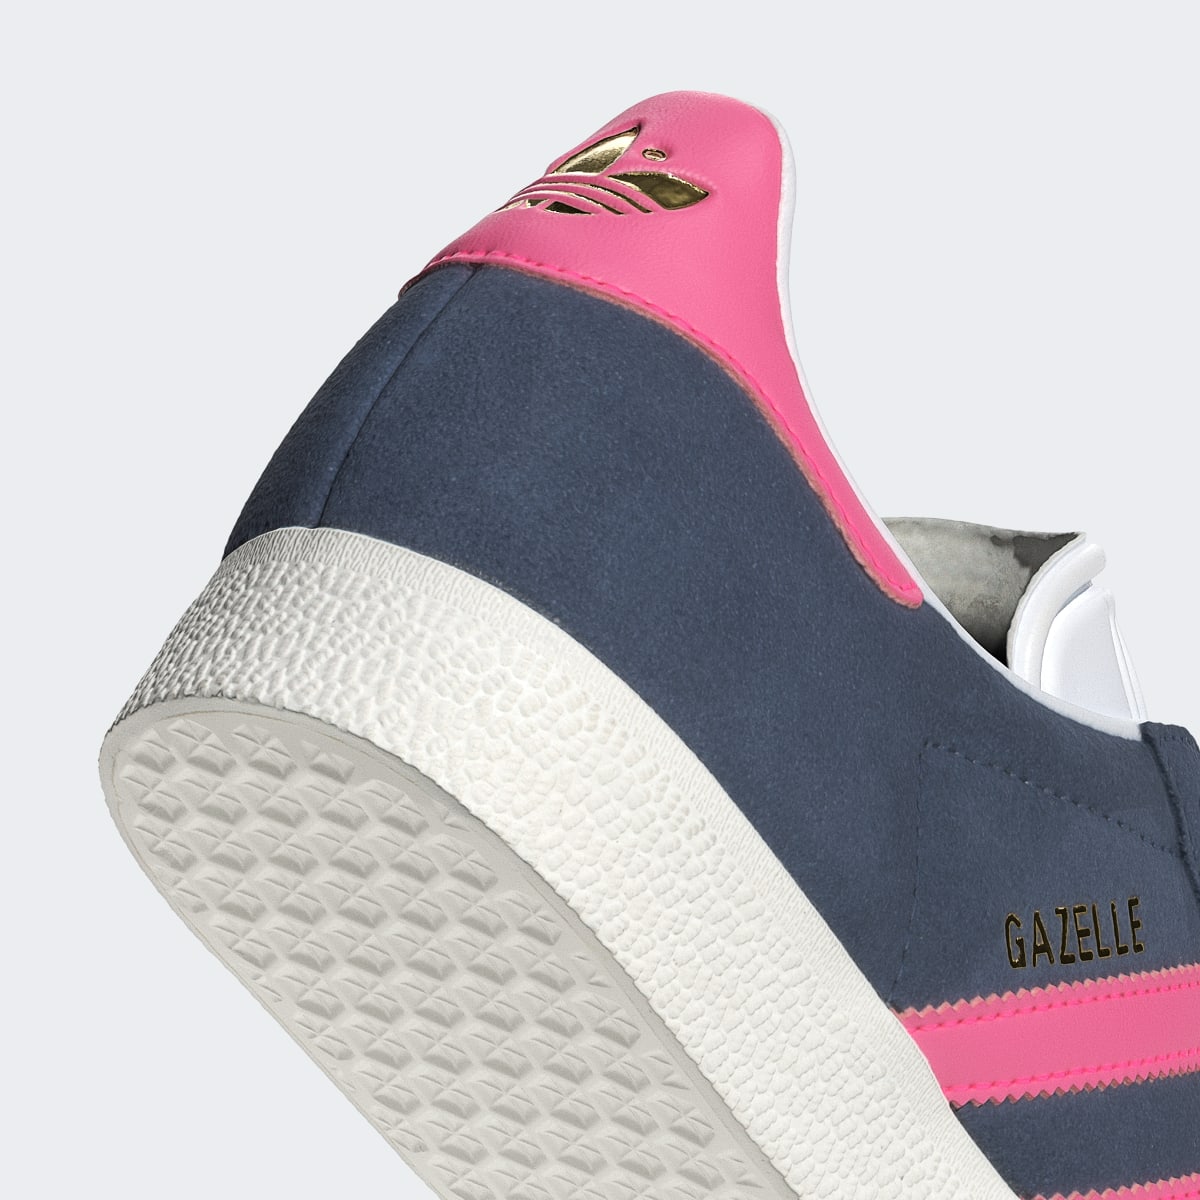 Adidas Gazelle Schuh. 10